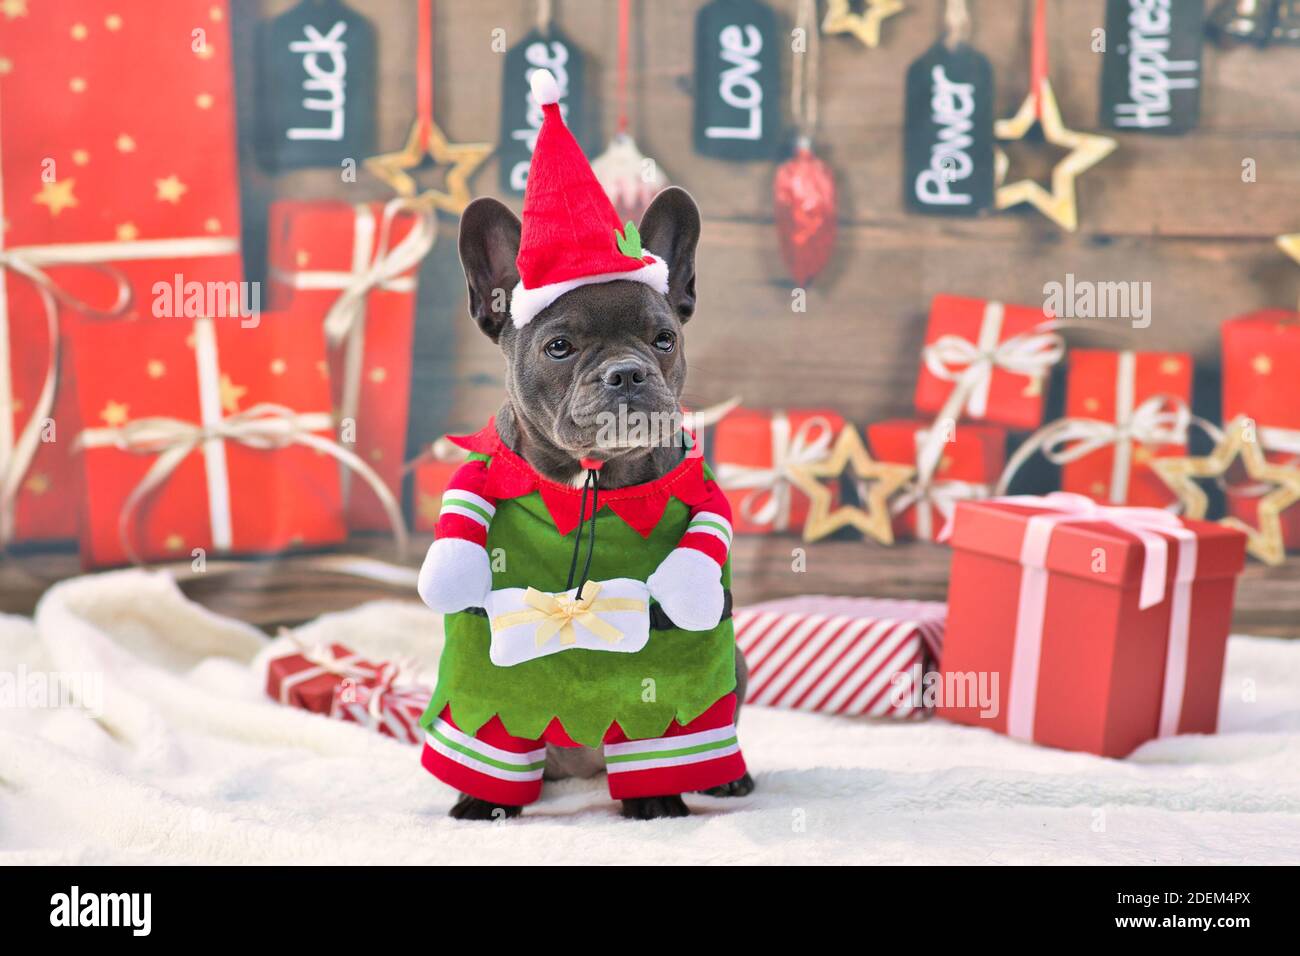 Französisch Bulldogge Hund trägt lustige traditionelle niedliche weihnachten Elfen Kostüm Mit Armen, die Geschenk halten und Weihnachtsmütze vor Saisonaler Hintergrund mit g Stockfoto